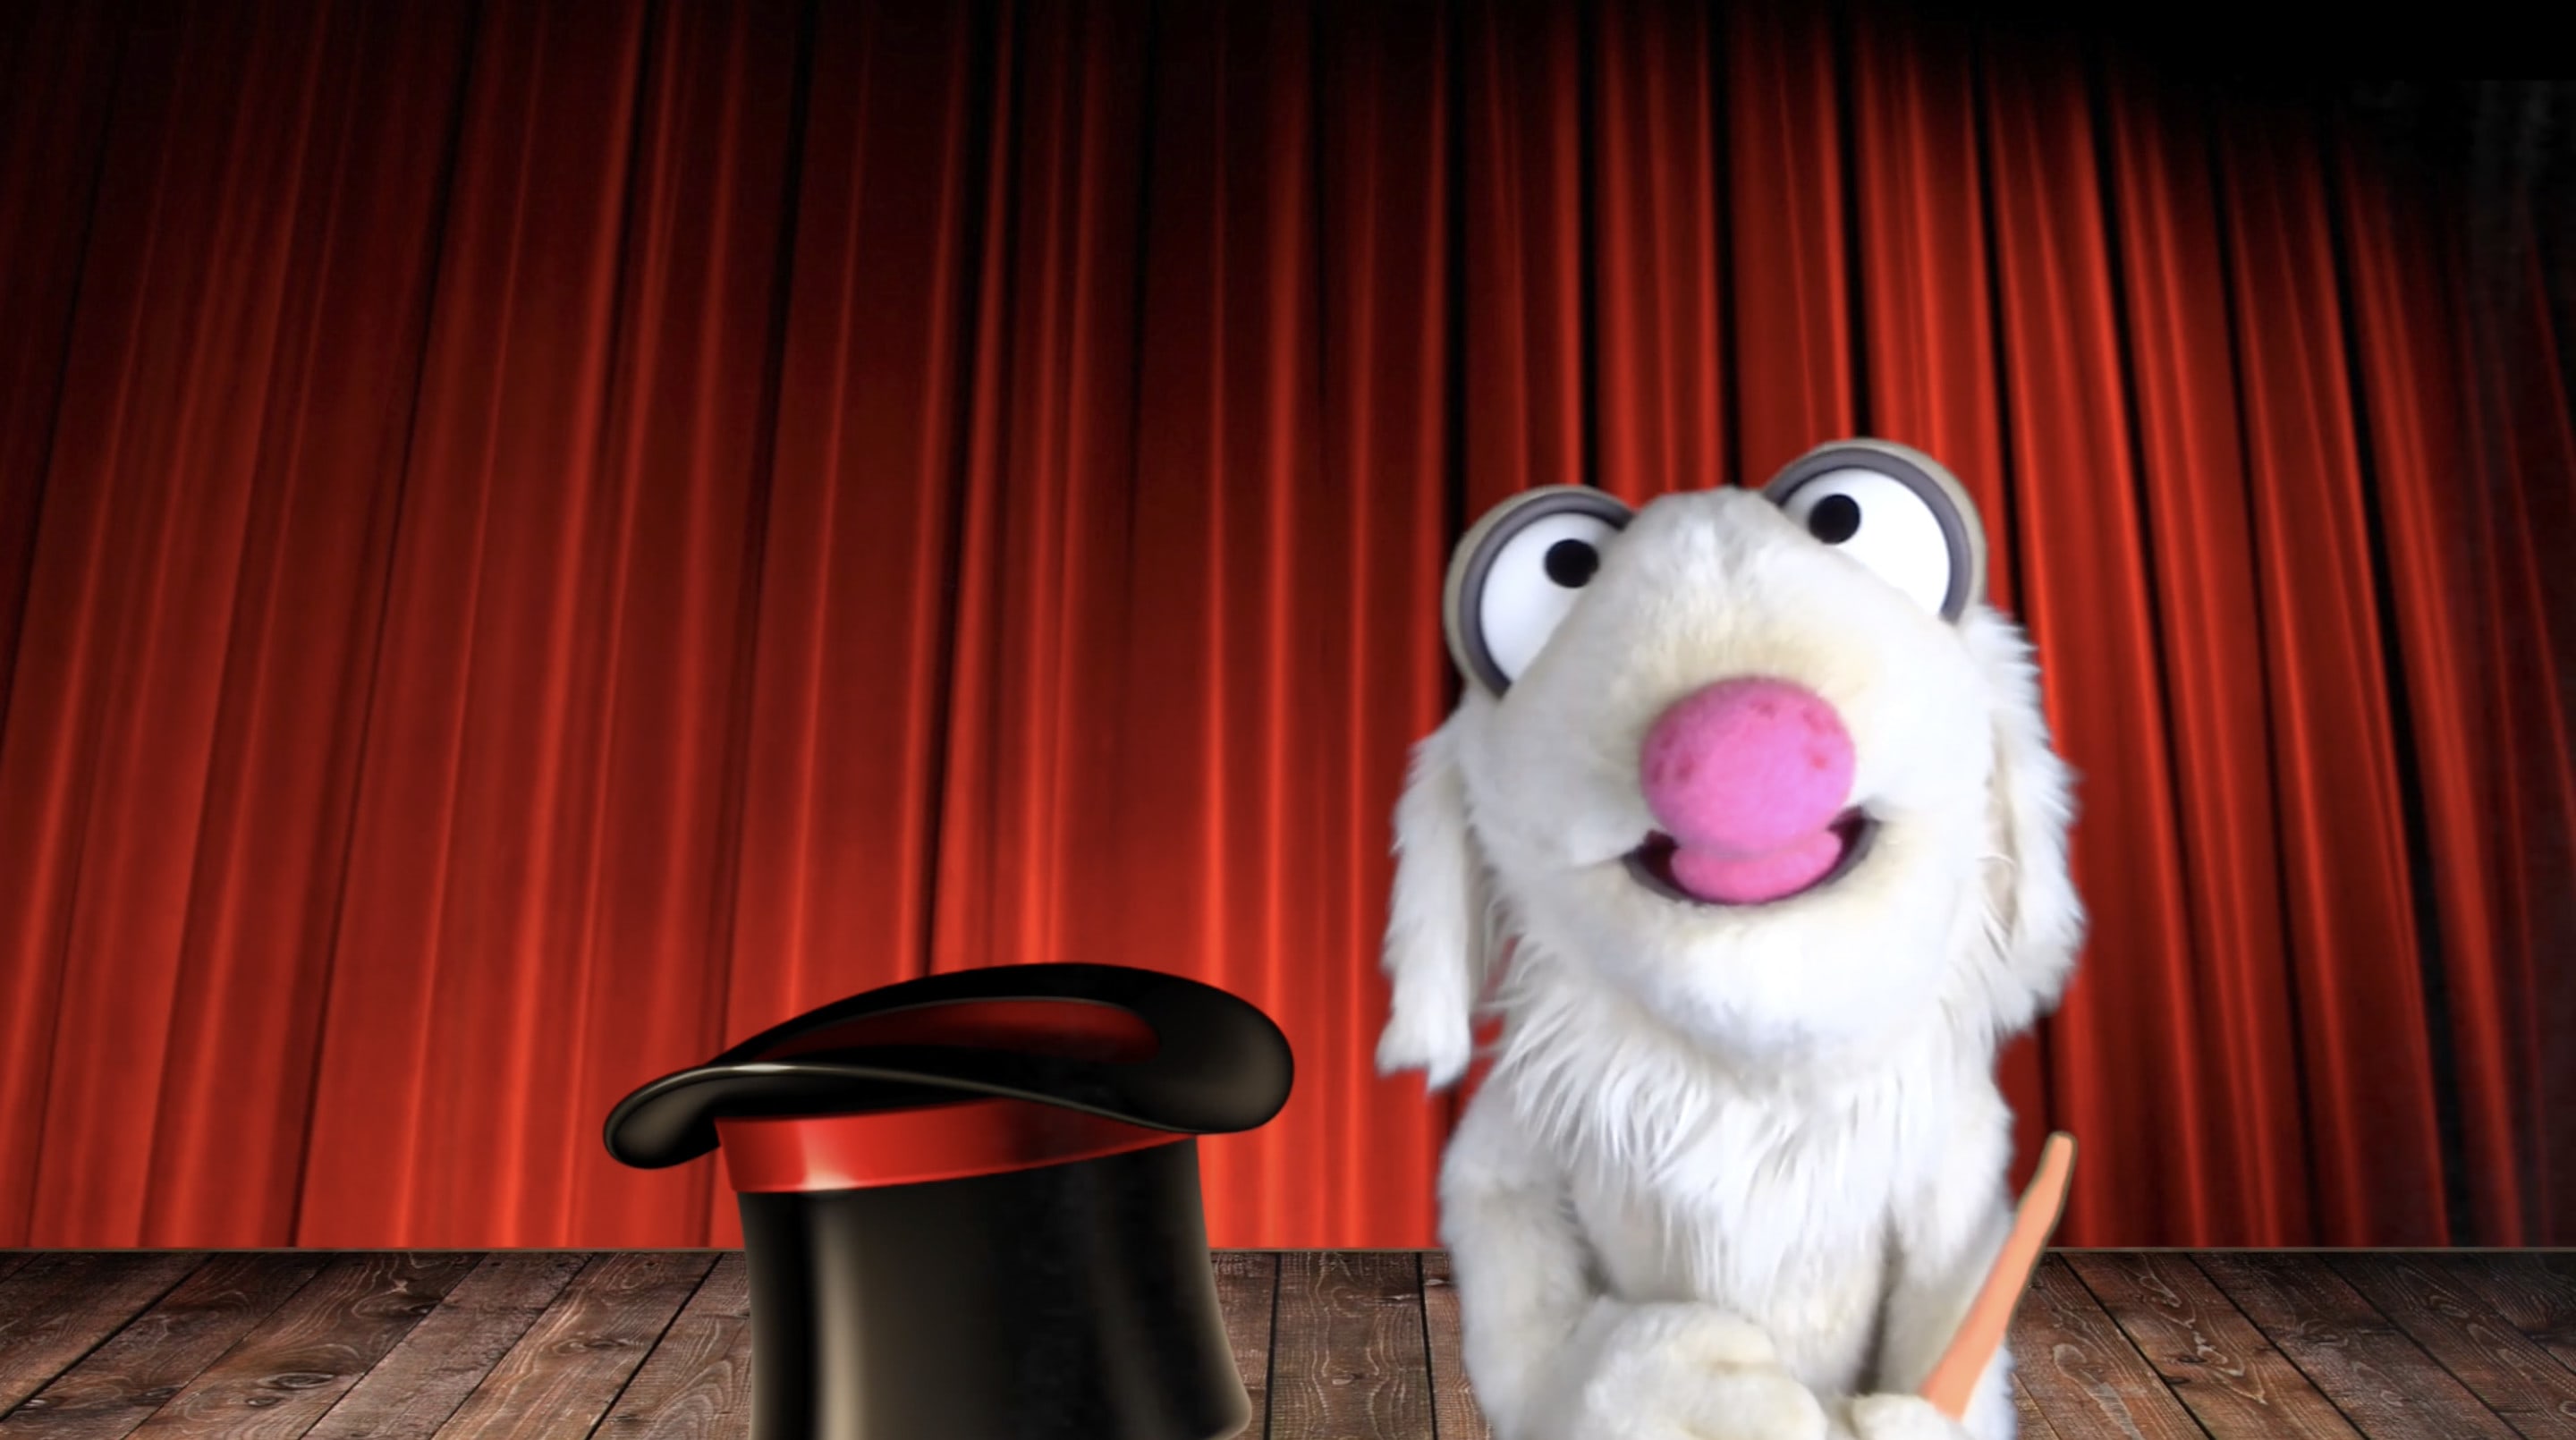 Demandez à barney le lapin magique de créer une vidéo de marionnettes.